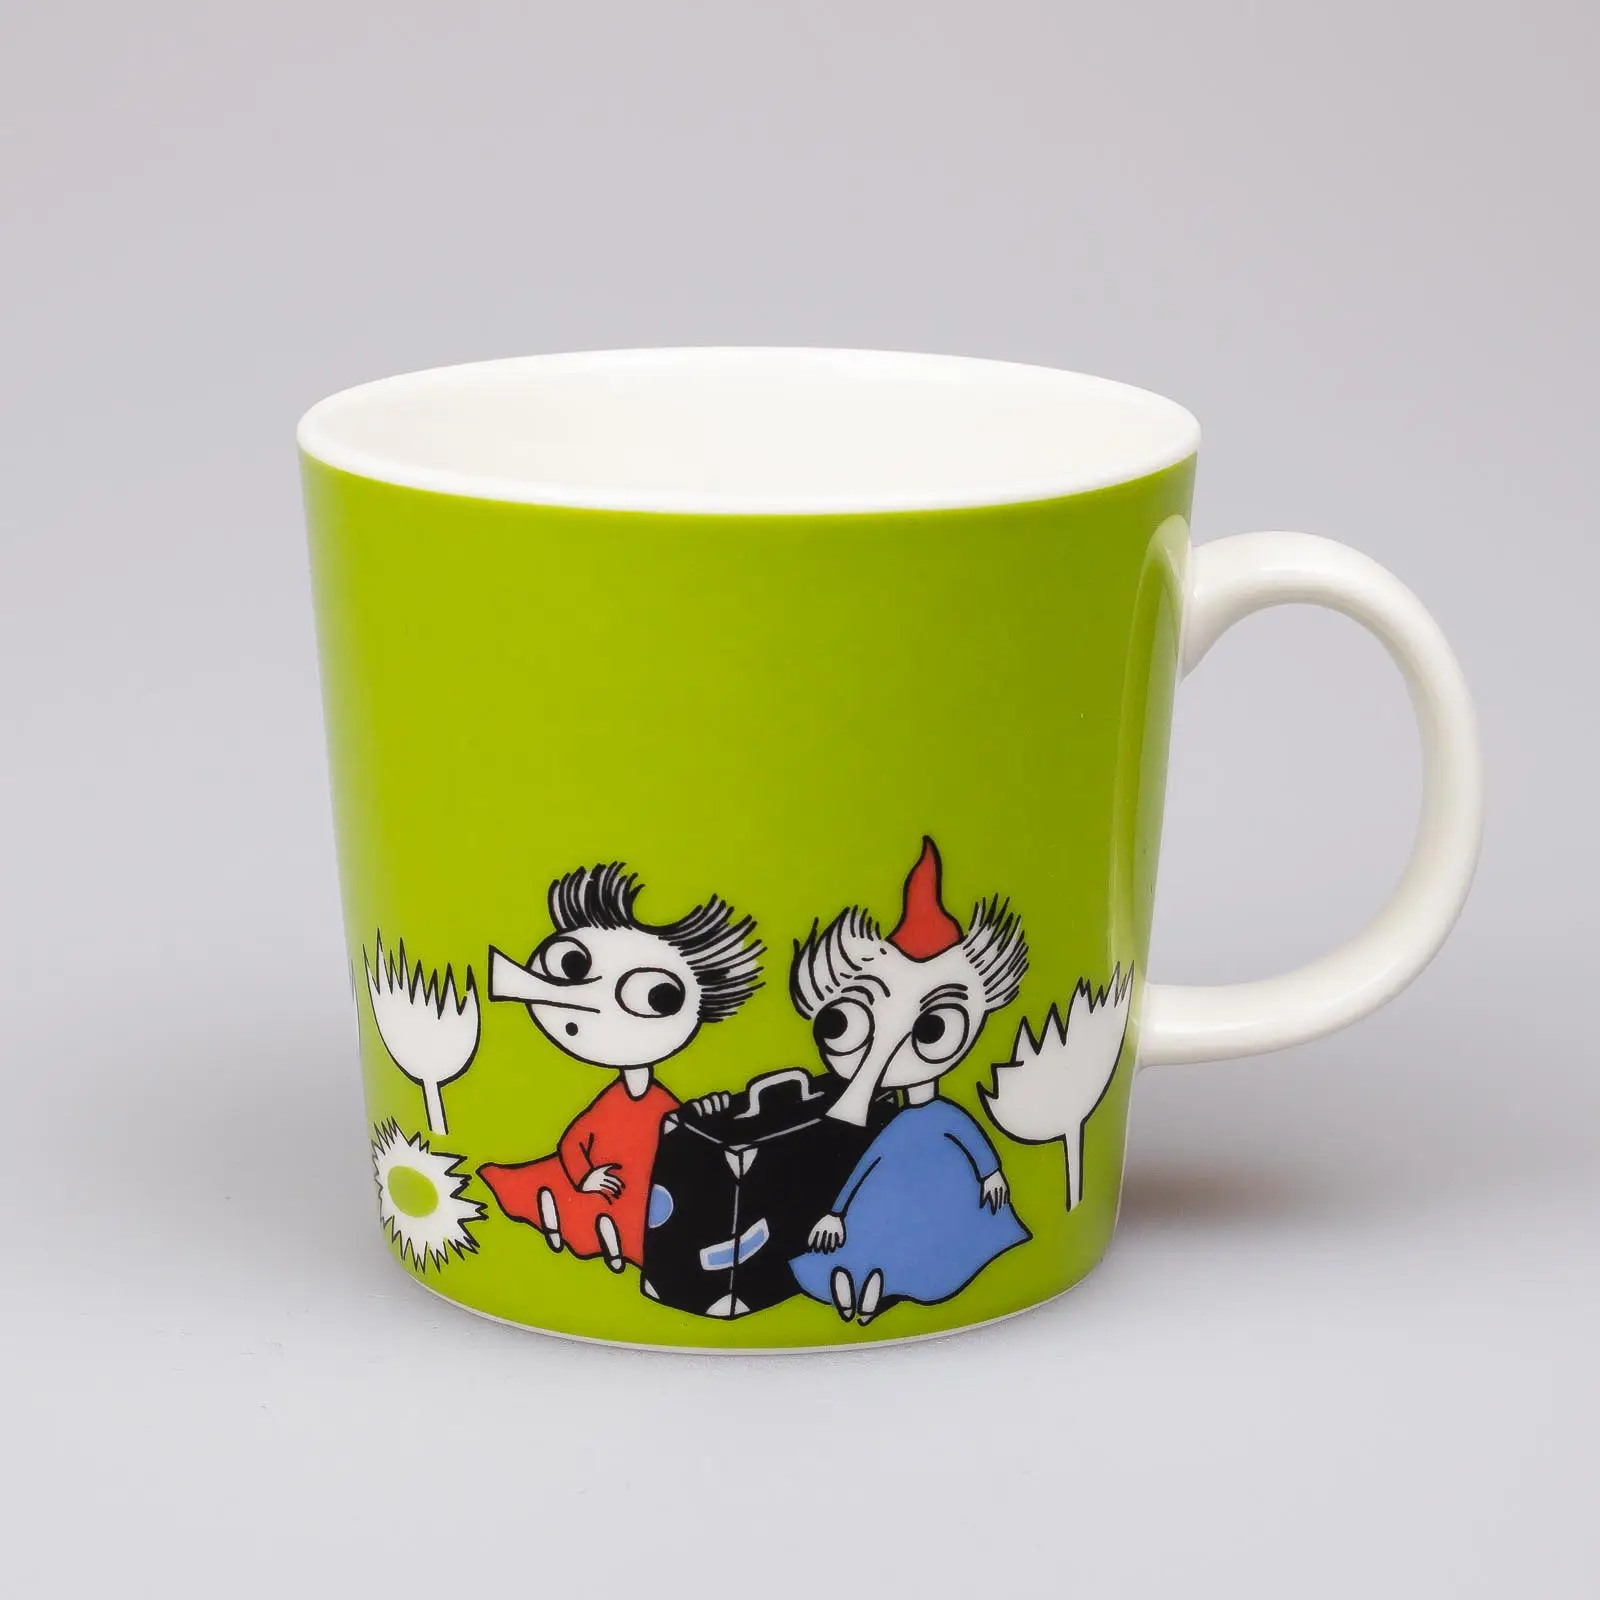 Moomin mug – Thingumy and Bob – (2005 – 2017)